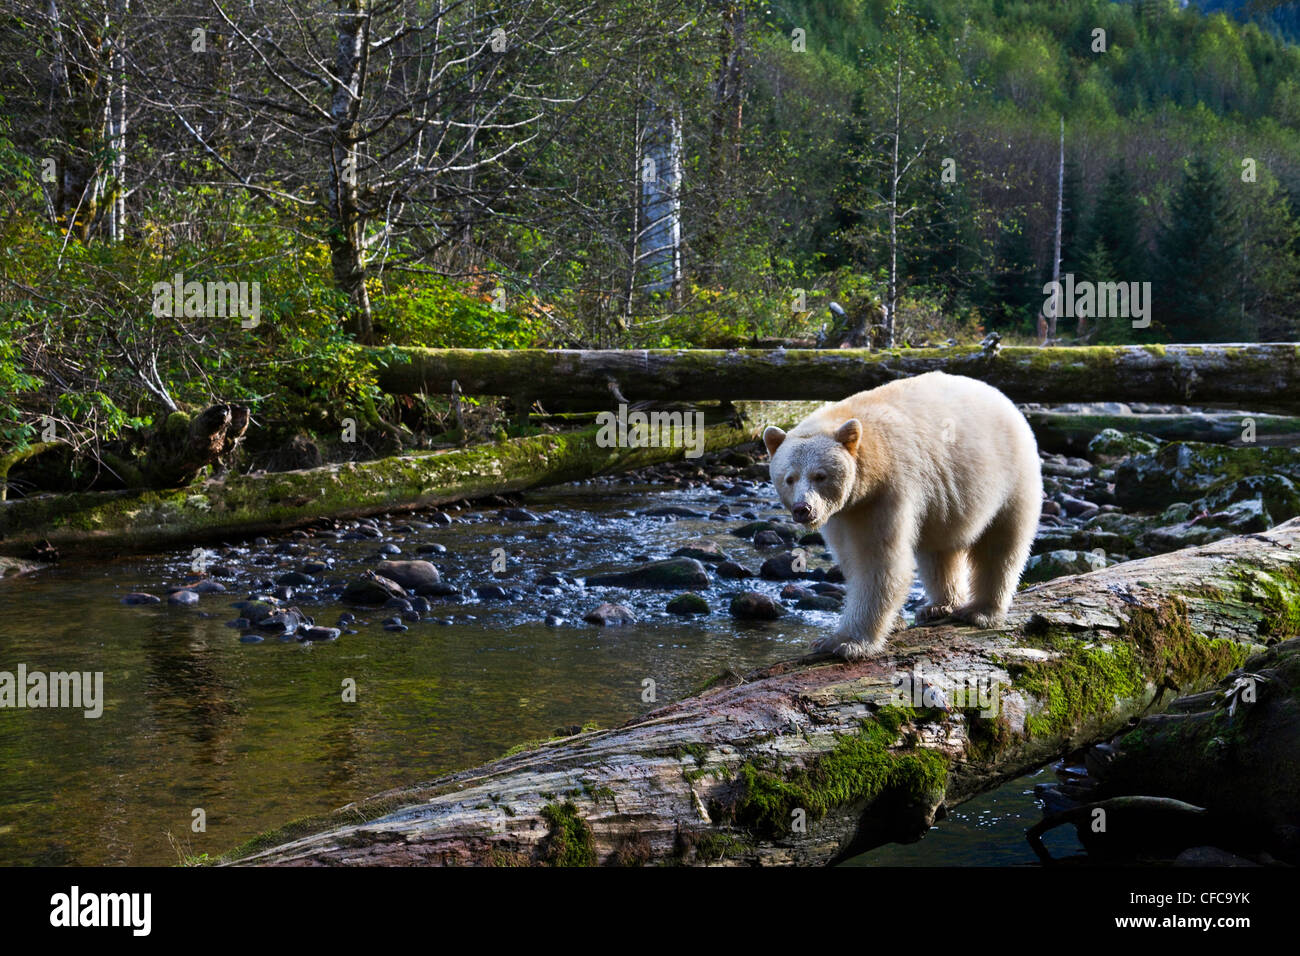 Kermode bear nella grande orso foresta pluviale della Columbia britannica in Canada Foto Stock